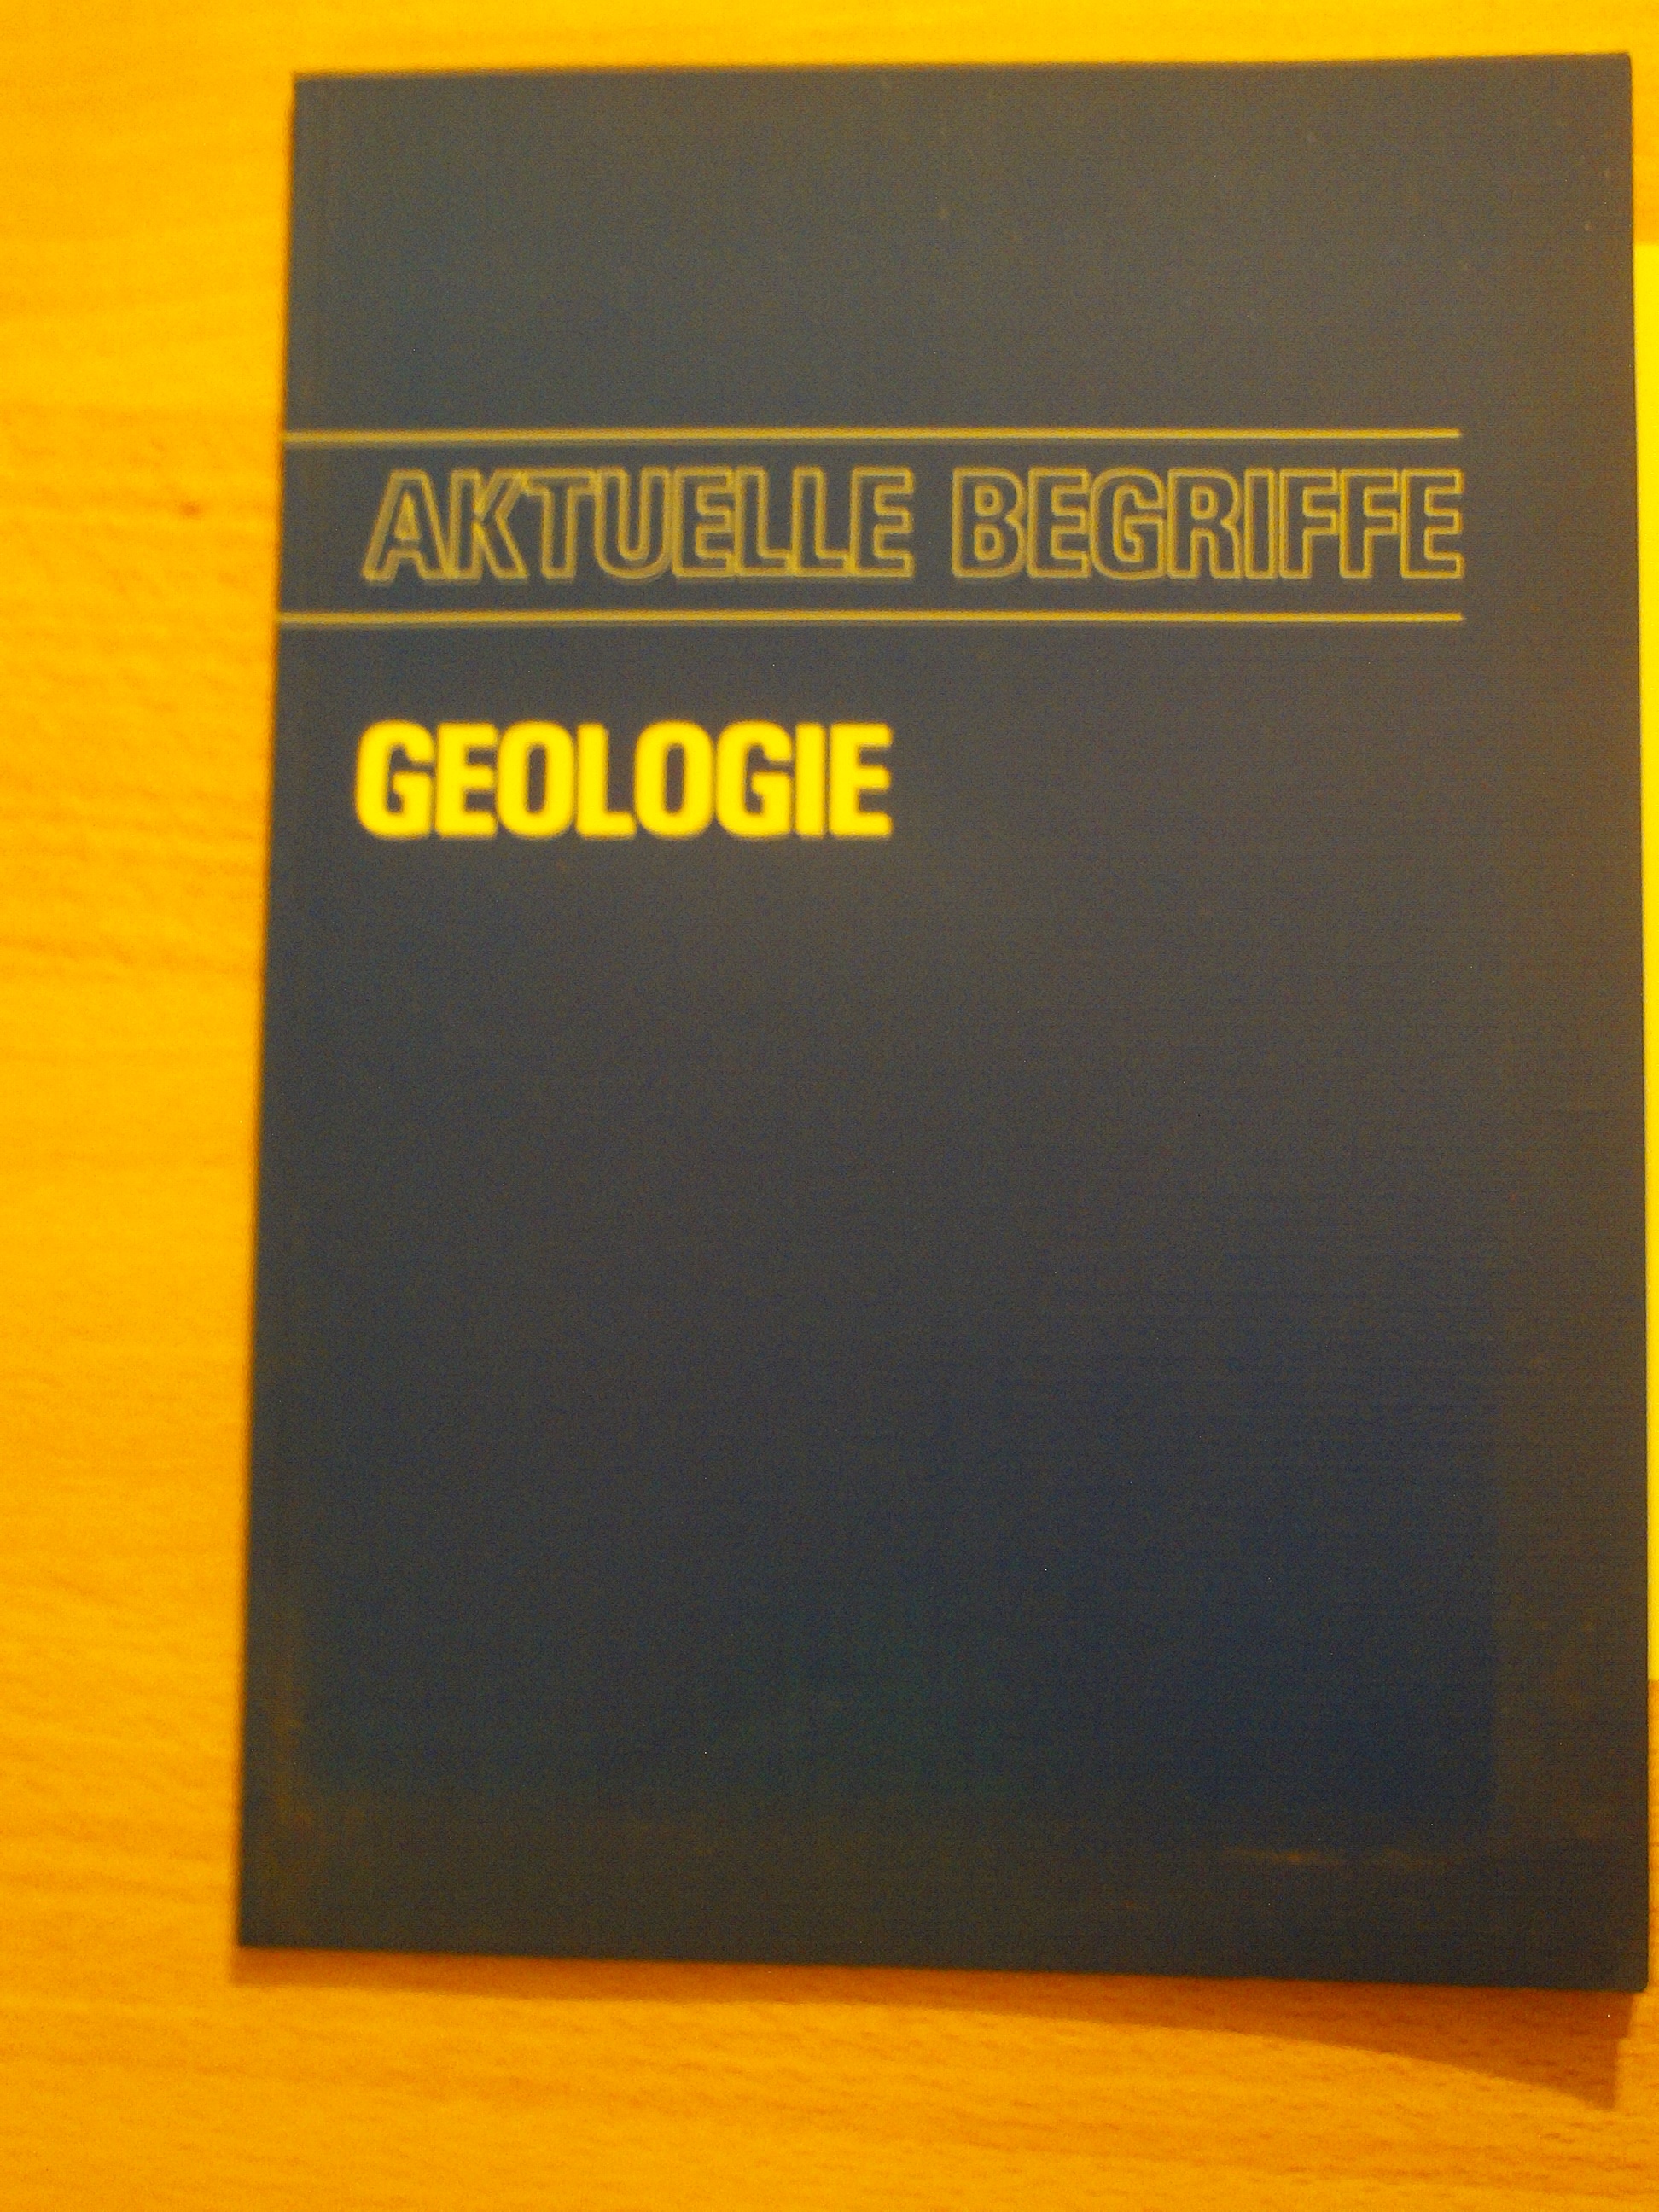 Aktuelle Begriffe GeologieWalter Stegemann (Hrsg.)